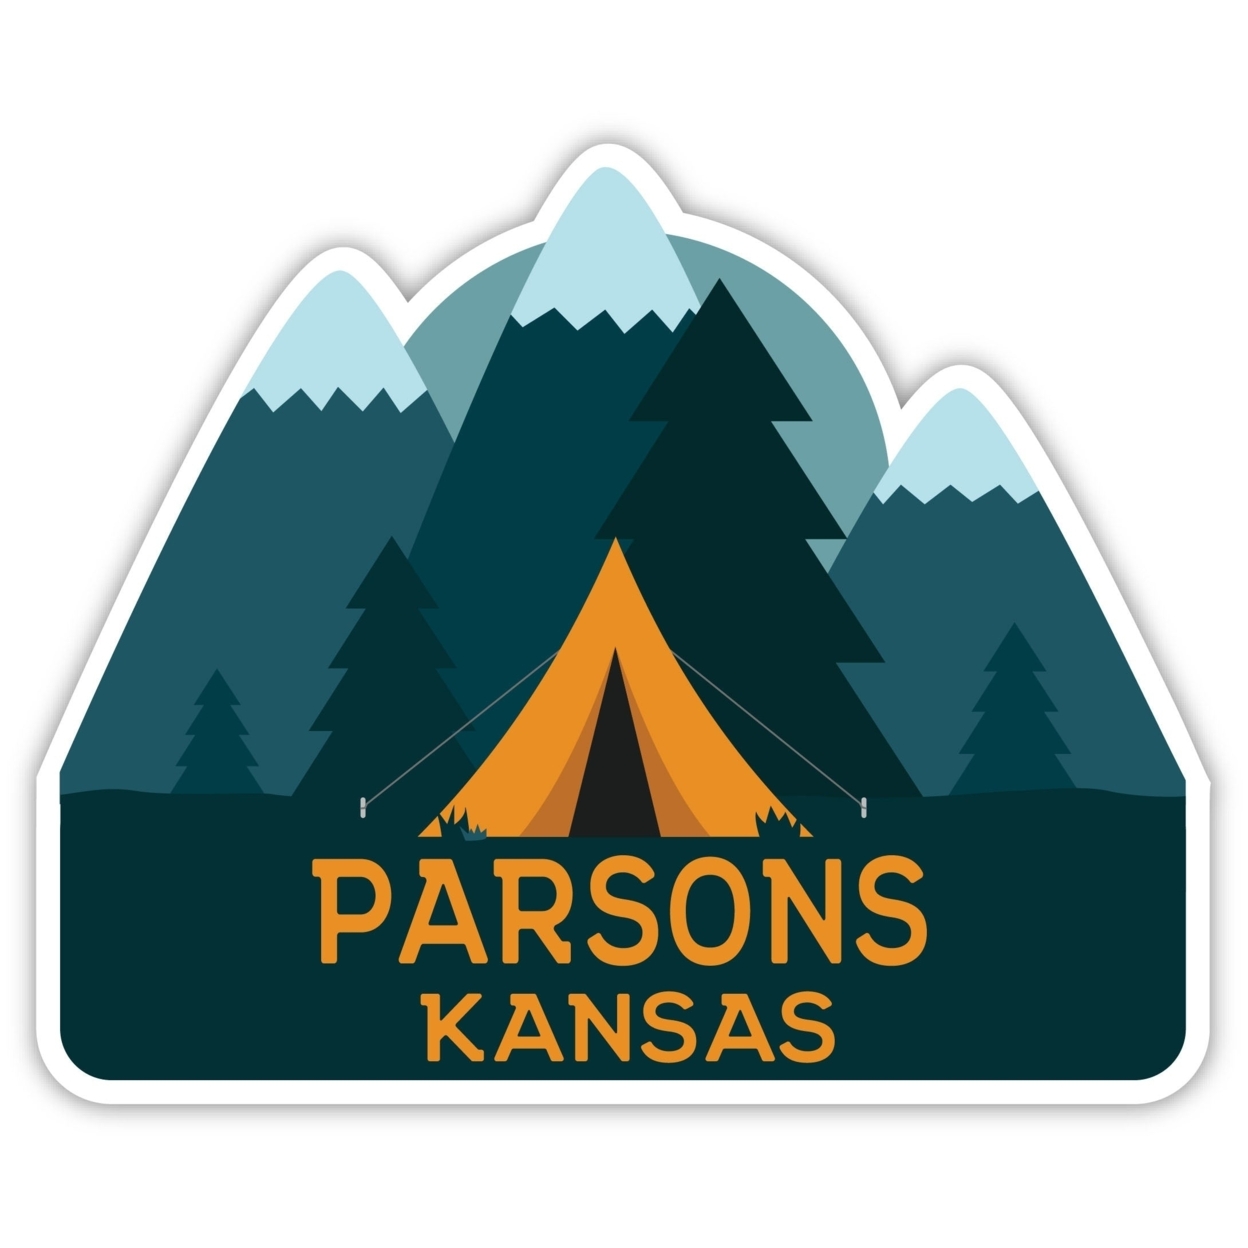 Parsons Kansas Souvenir Decorative Stickers (Choose Theme And Size) - Single Unit, 4-Inch, Tent